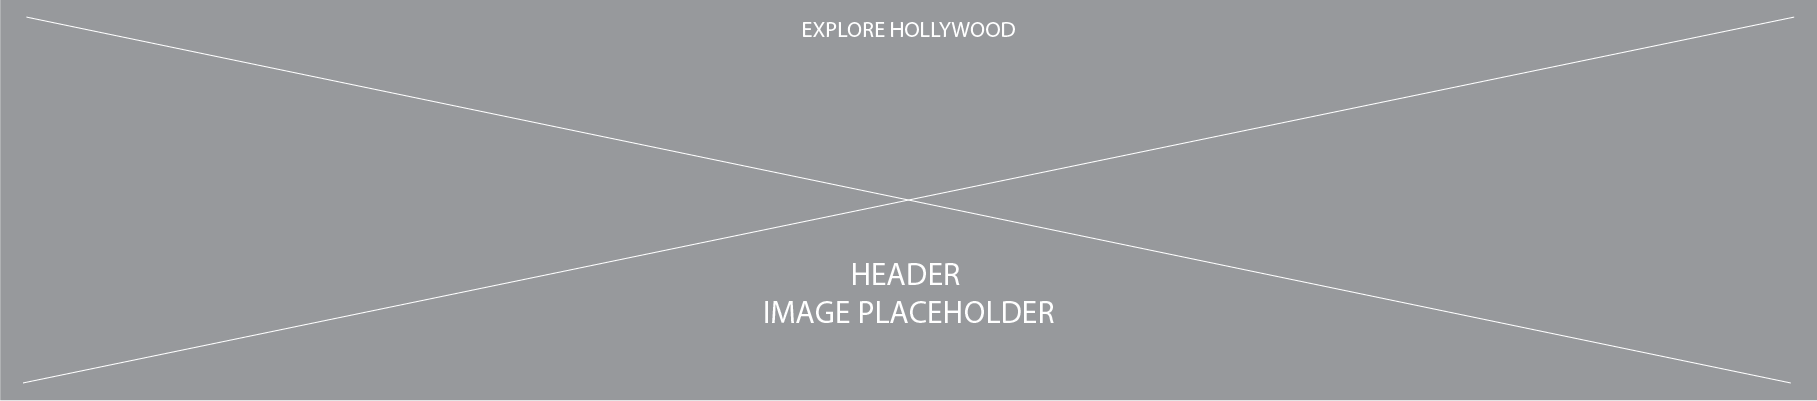 Header Image Placeholder